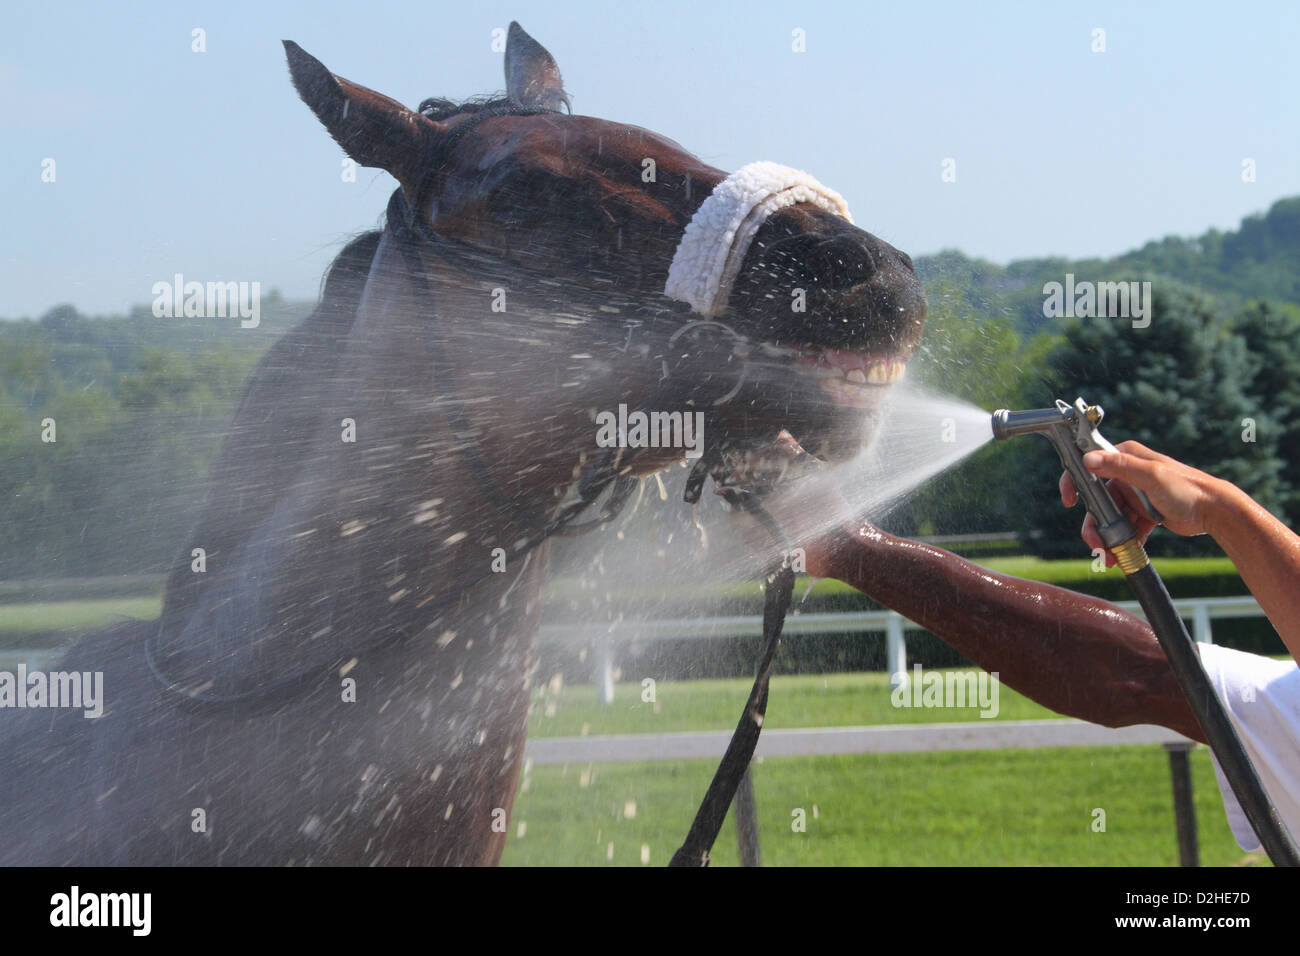 Uno spruzzo di acqua per raffreddare il cavallo da corsa dopo una gara. Corse a cavallo presso il River Downs via, Cincinnati, Ohio, Stati Uniti d'America. Foto Stock